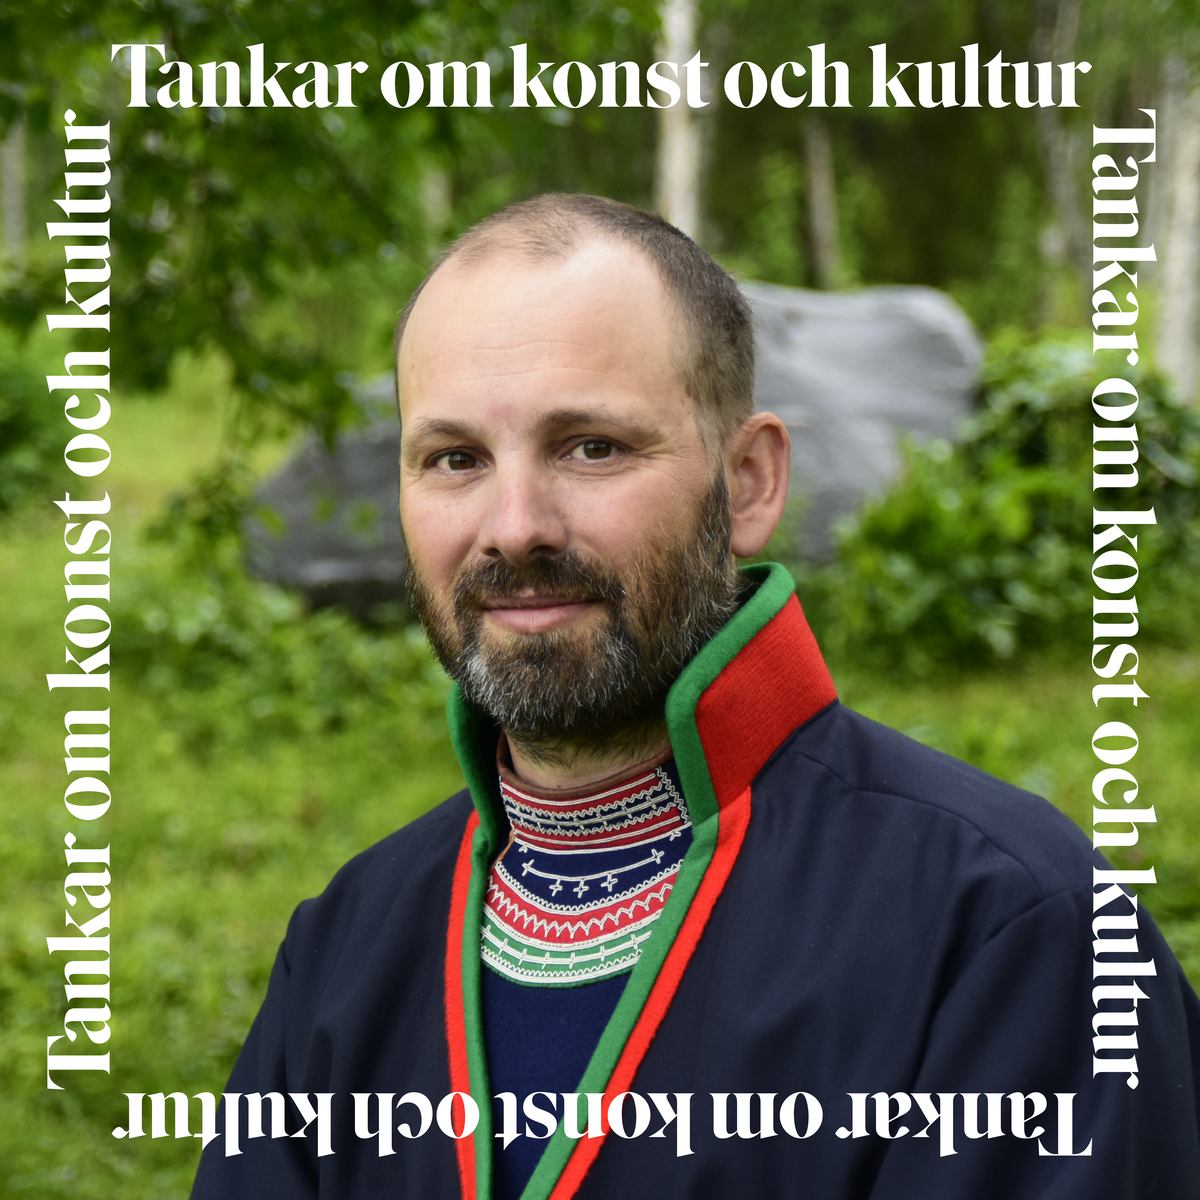 Oskar_Tankar_om